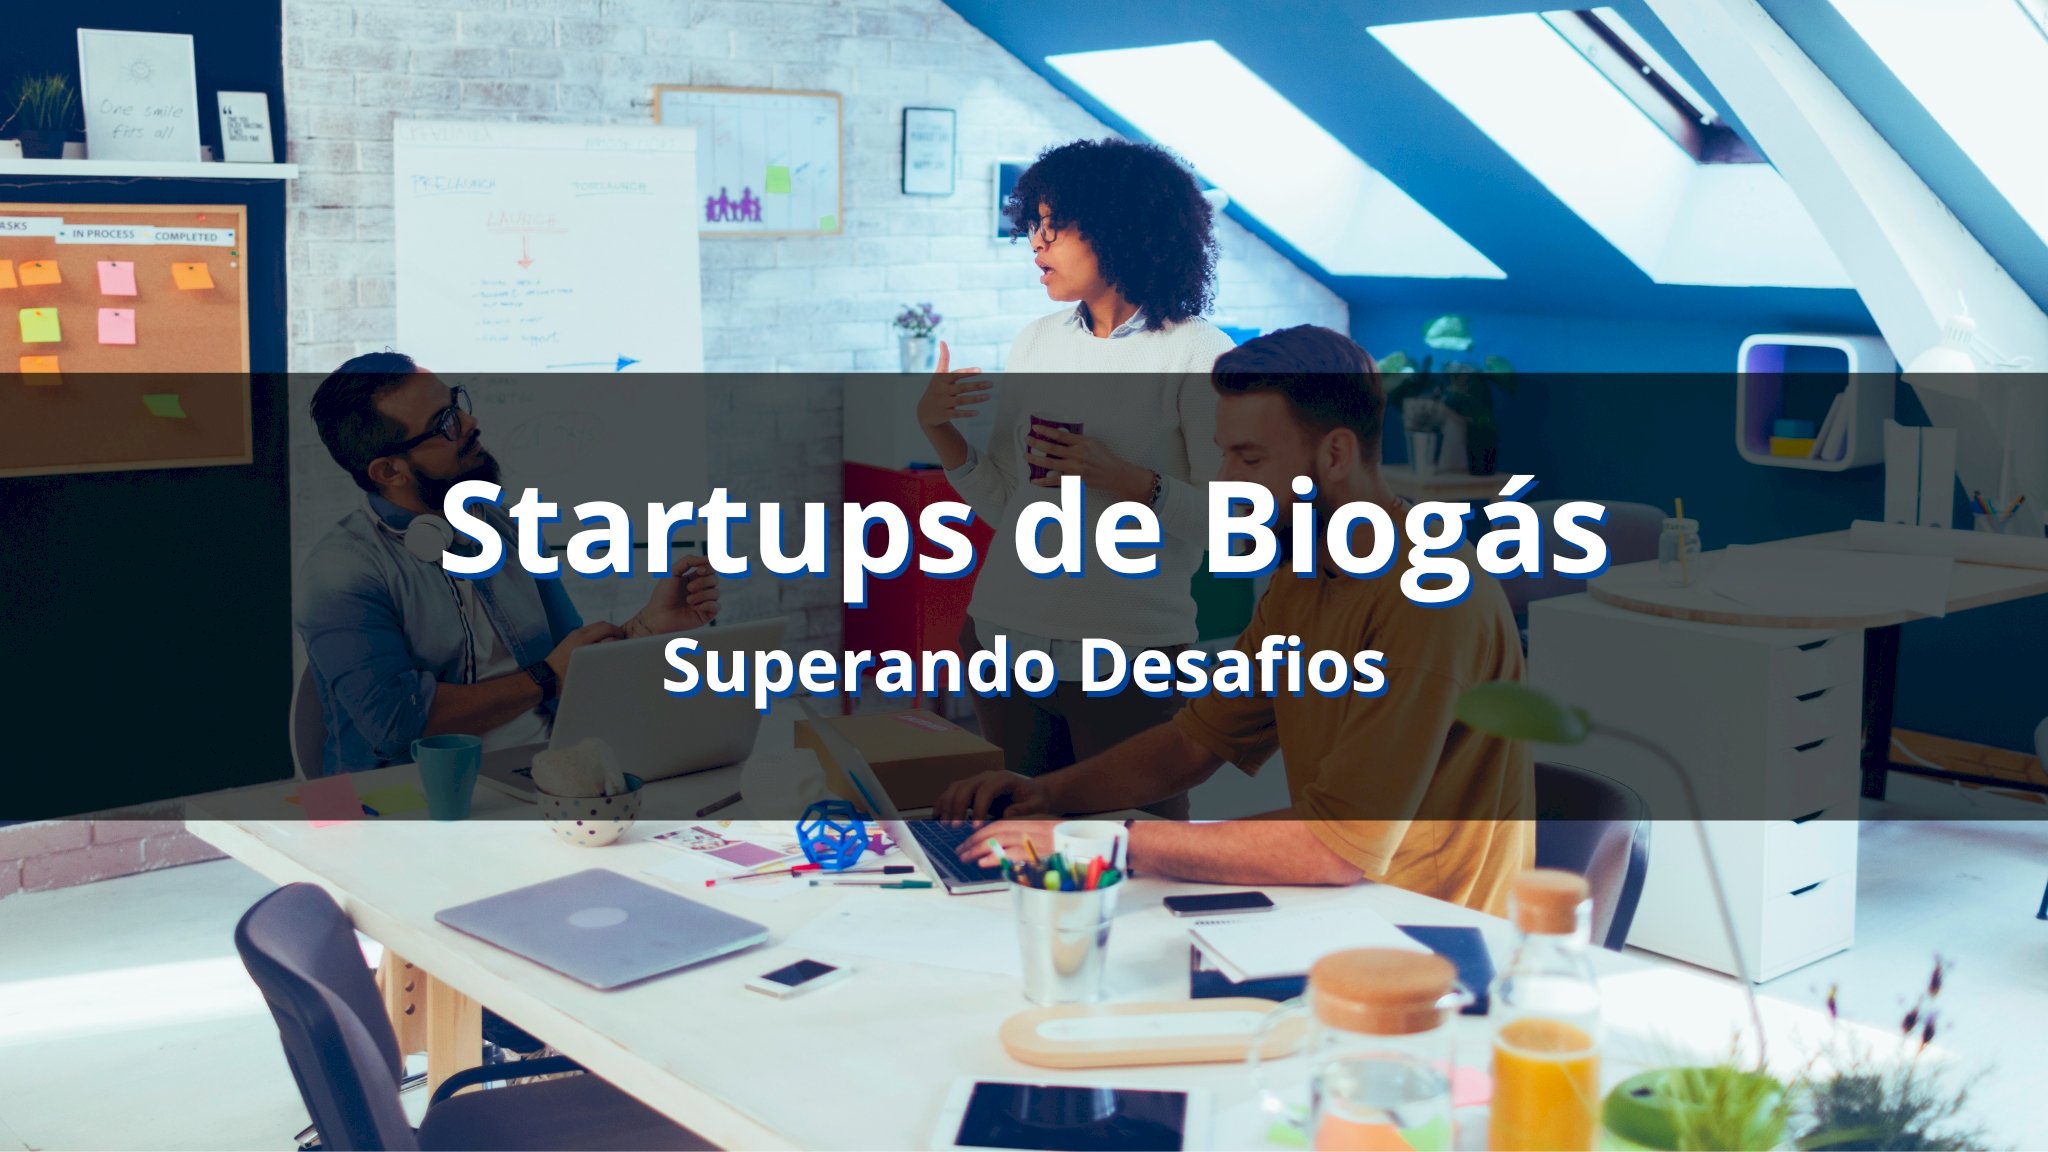 Startups de Biogás: superando desafios